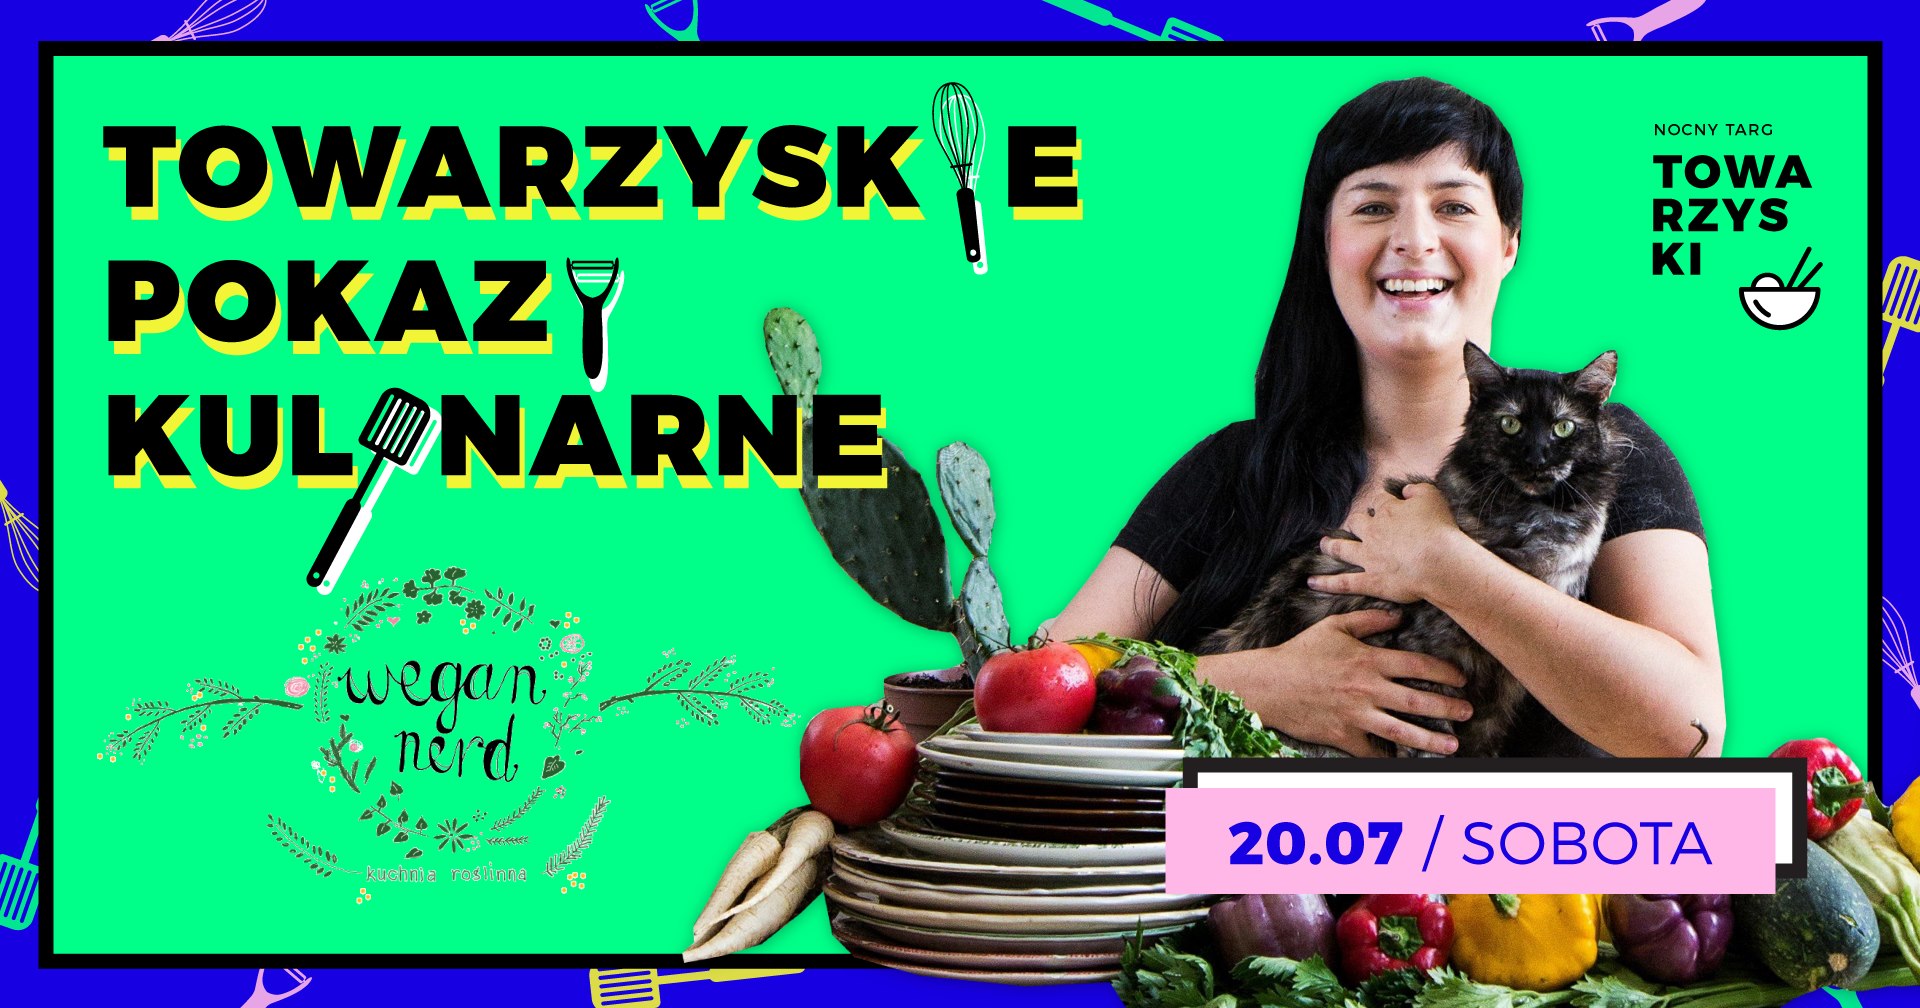  Wegańskie pokazy kulinarne z Wegan Nerd (Alicja Rokicka) Poznań